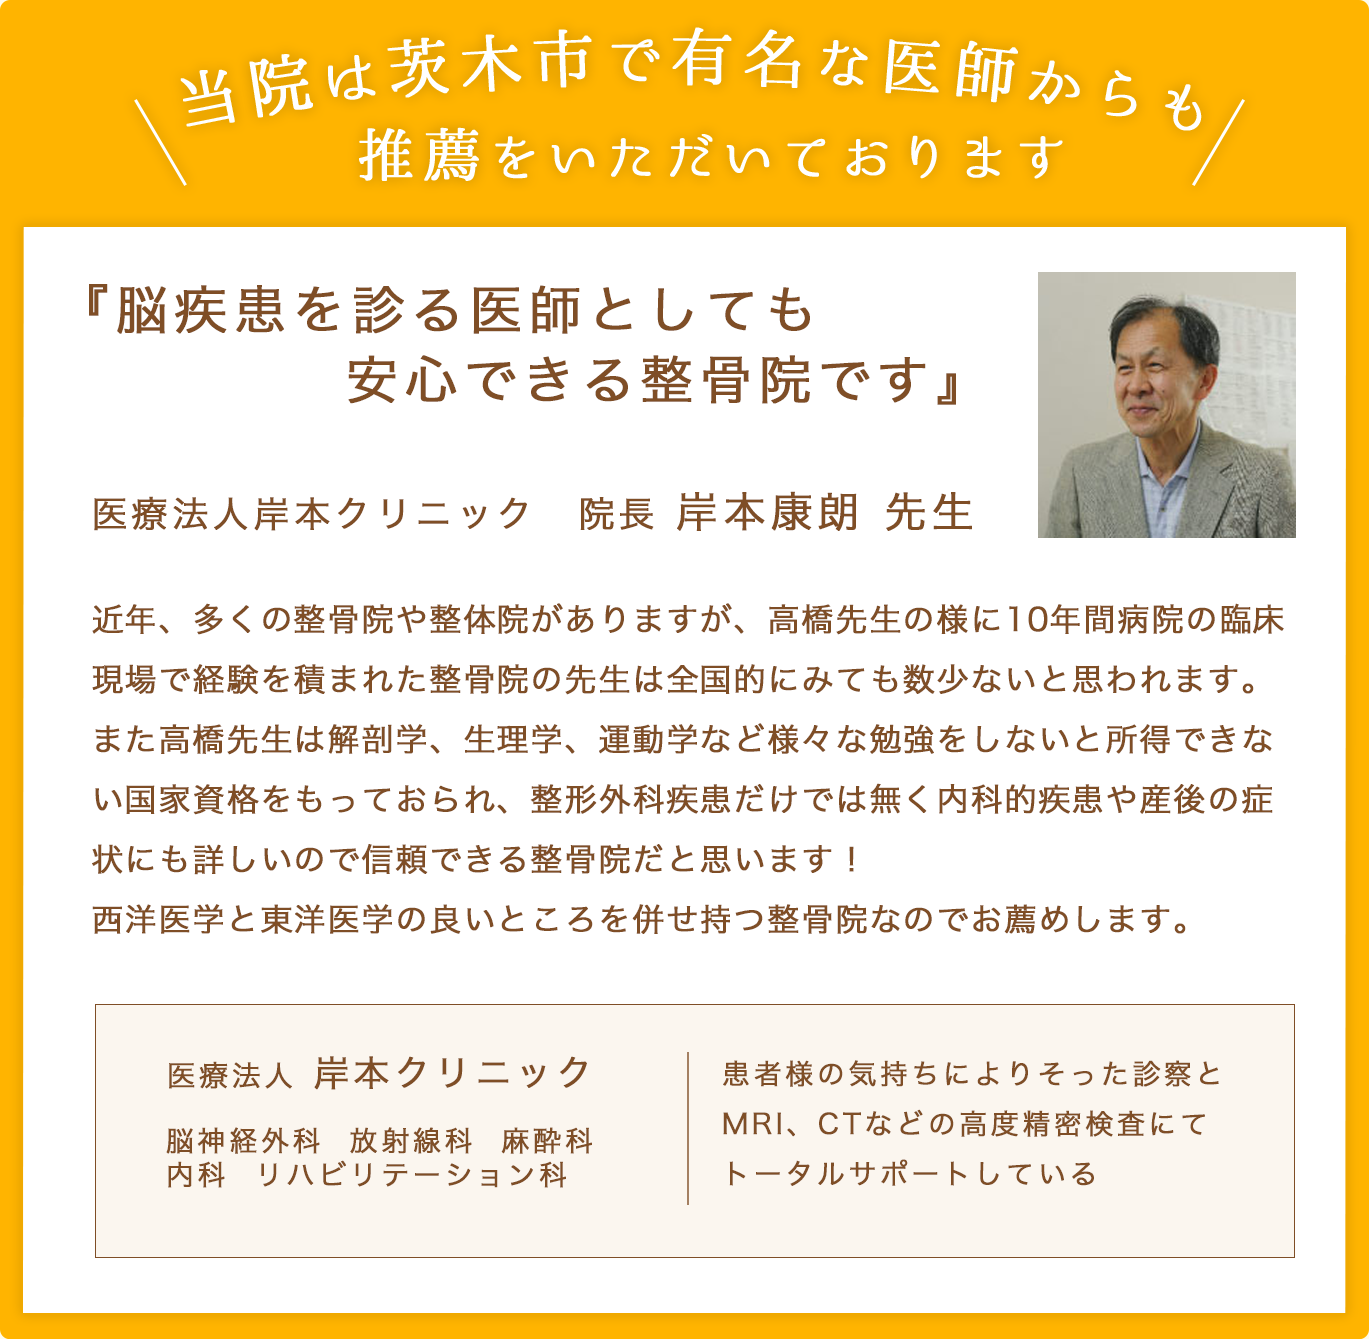 高橋ひろゆき整骨院は茨木市で有名な医師の推薦をいただいております。